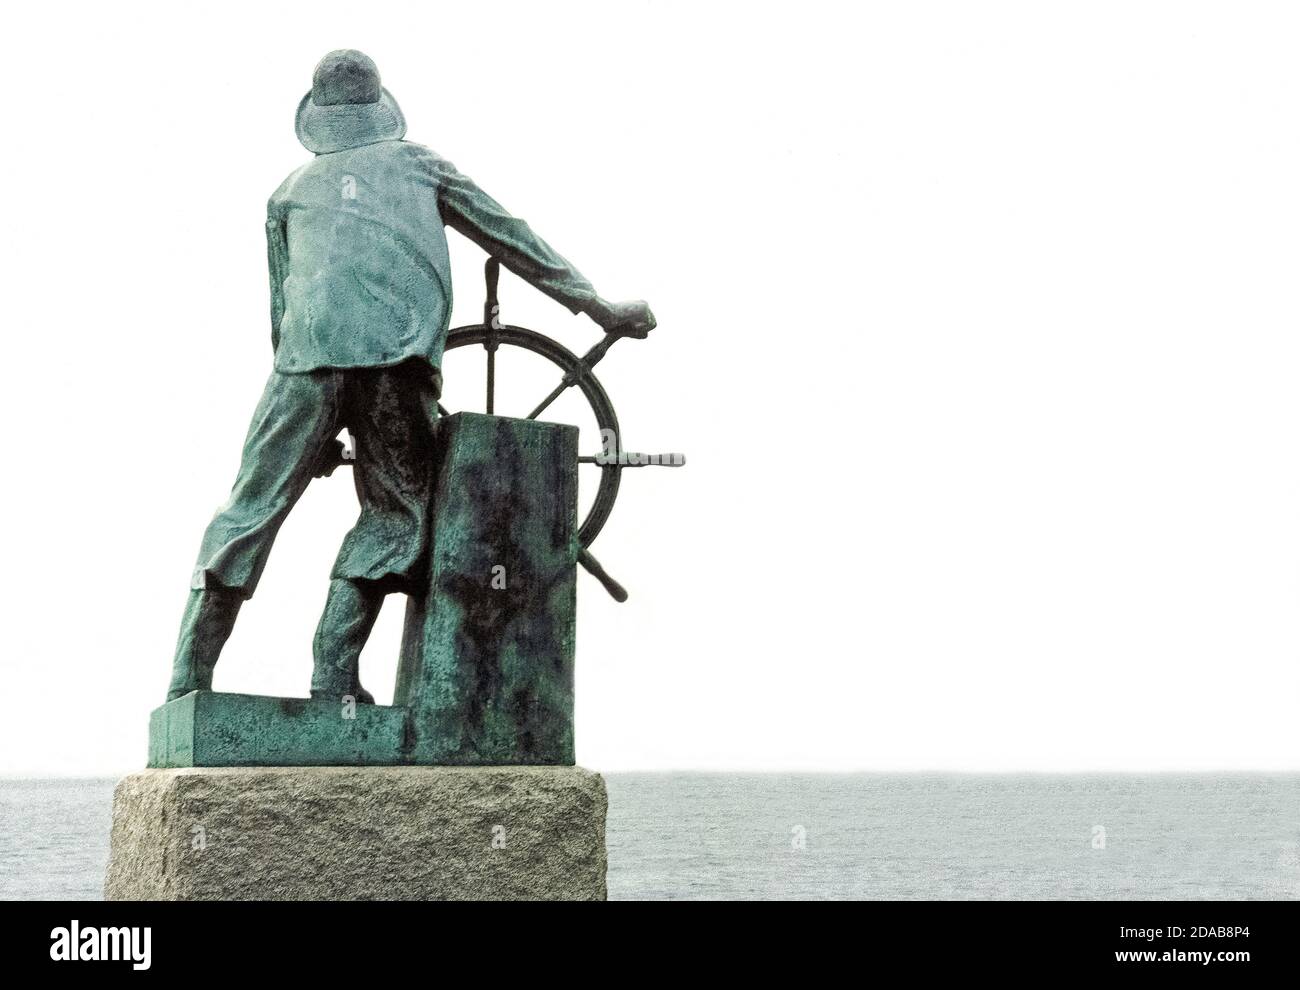 Diese Bronzestatue eines Fischers am Schiffsrad blickt auf den Hafen in Gloucester, Massachusetts, USA, als Denkmal für die Tausenden von Fischern, die während der ersten drei Jahrhunderte (1623-1923) der Geschichte dieser Stadt in Neuengland auf See verloren gegangen sind. Aus einem biblischen Psalm stammt die bekannte Inschrift des Denkmals: "Die in Schiffen ins Meer hinunterfahren." Es ist auf einem großen Granitblock gemeißelt, in dem die 2.4 Meter hohe Statue des englischen Bildhauers Leonard Craske steht. Dieses berühmte Denkmal steht im US National Register of Historic Places. Stockfoto